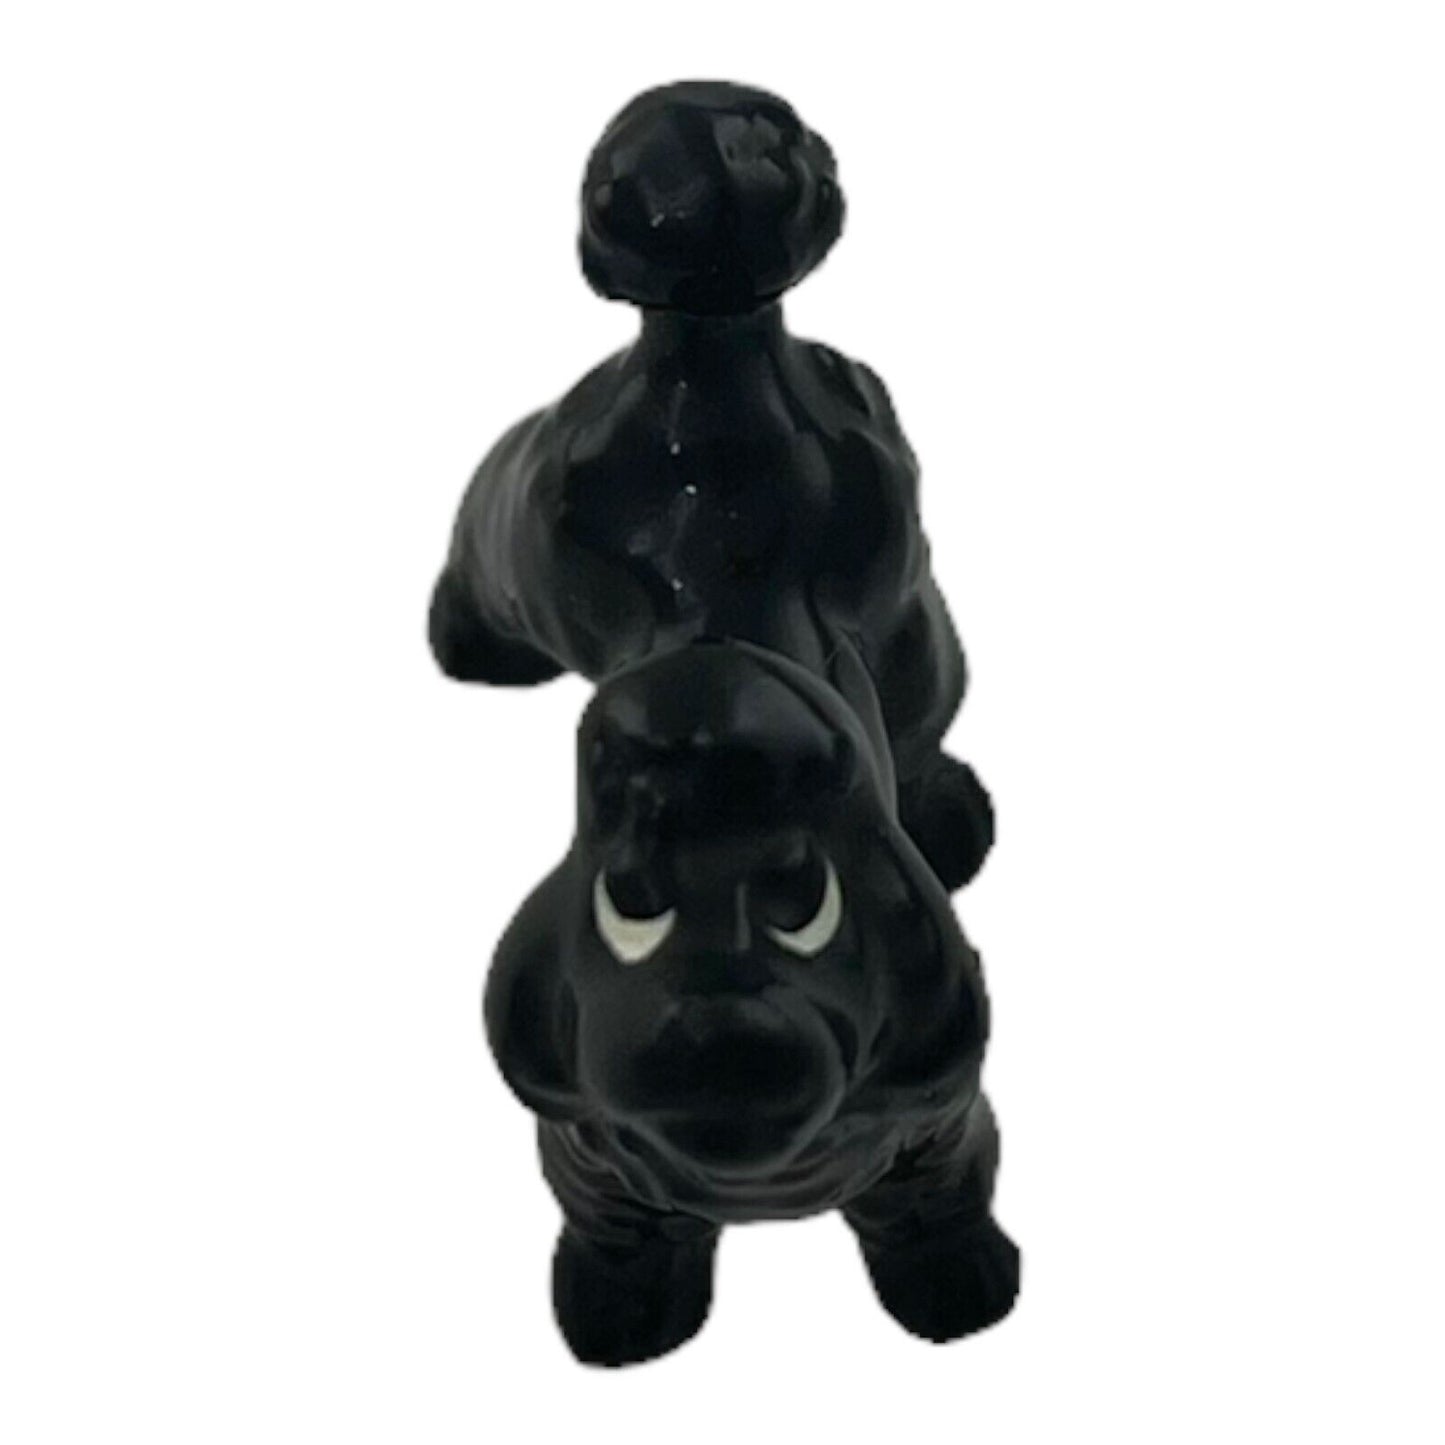 Black Poodle 1 Inch Decorative Vintage Porcelain Figurine